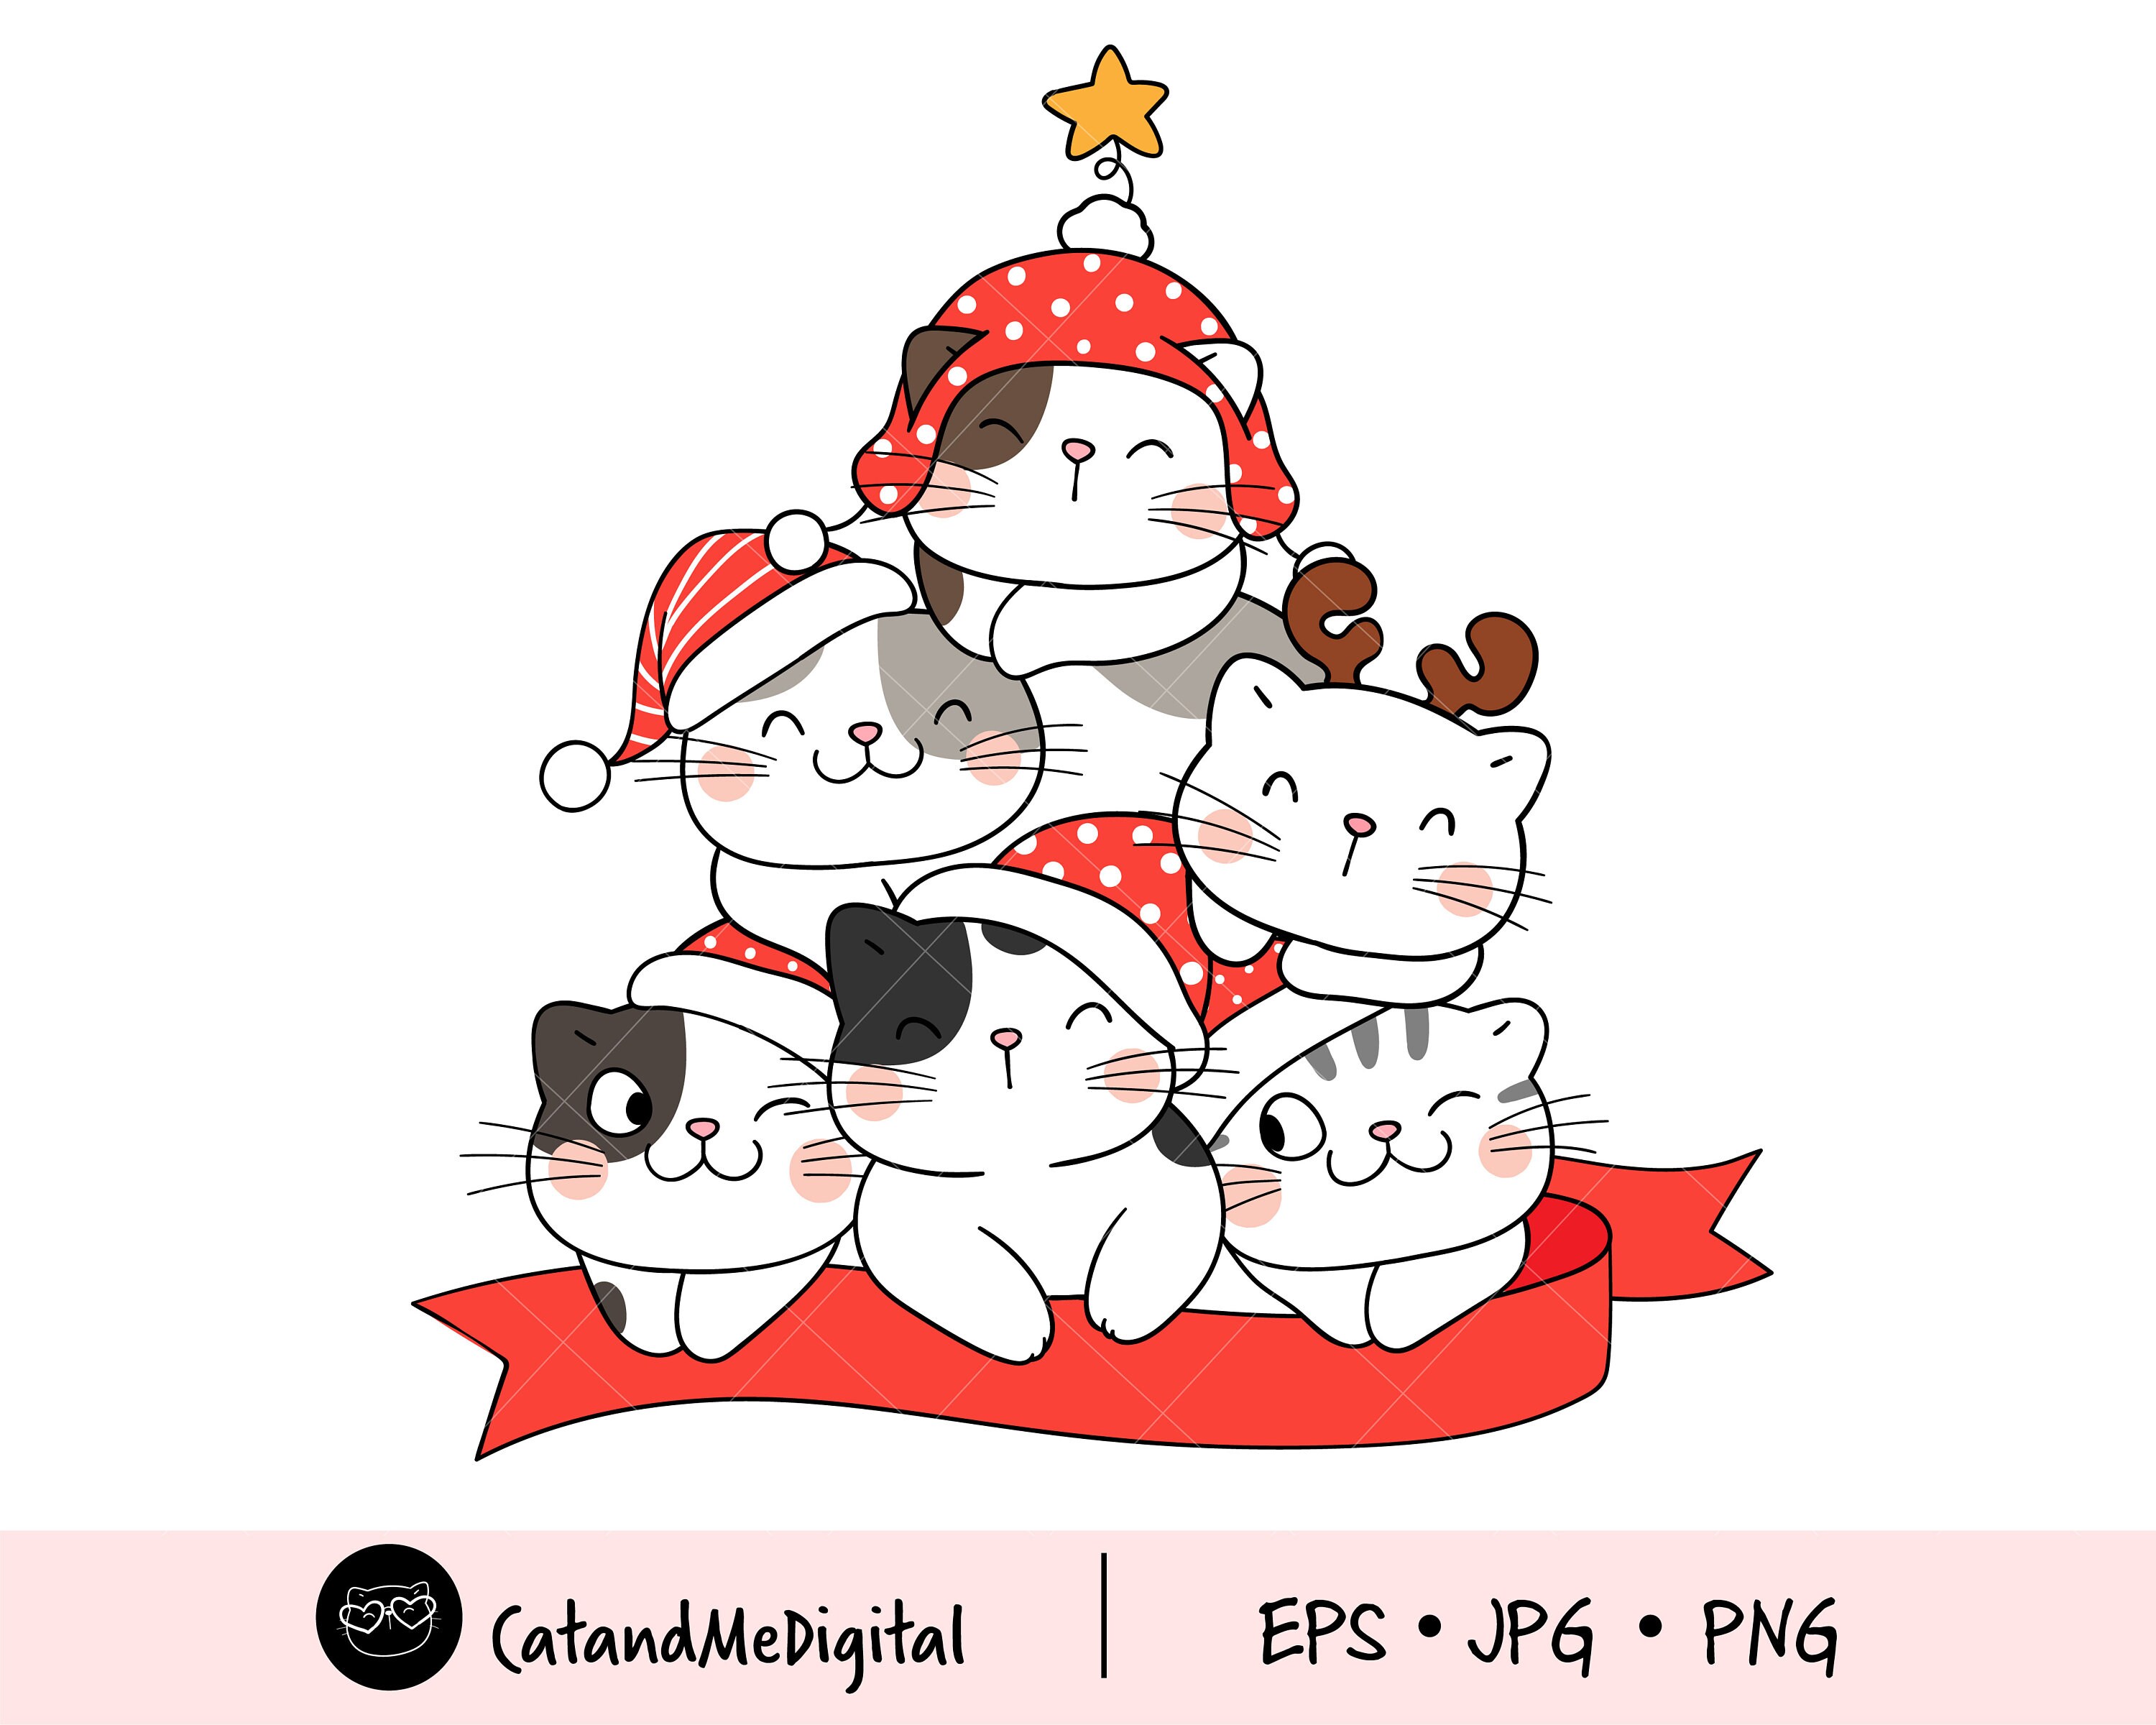 holiday cat clipart cartoon